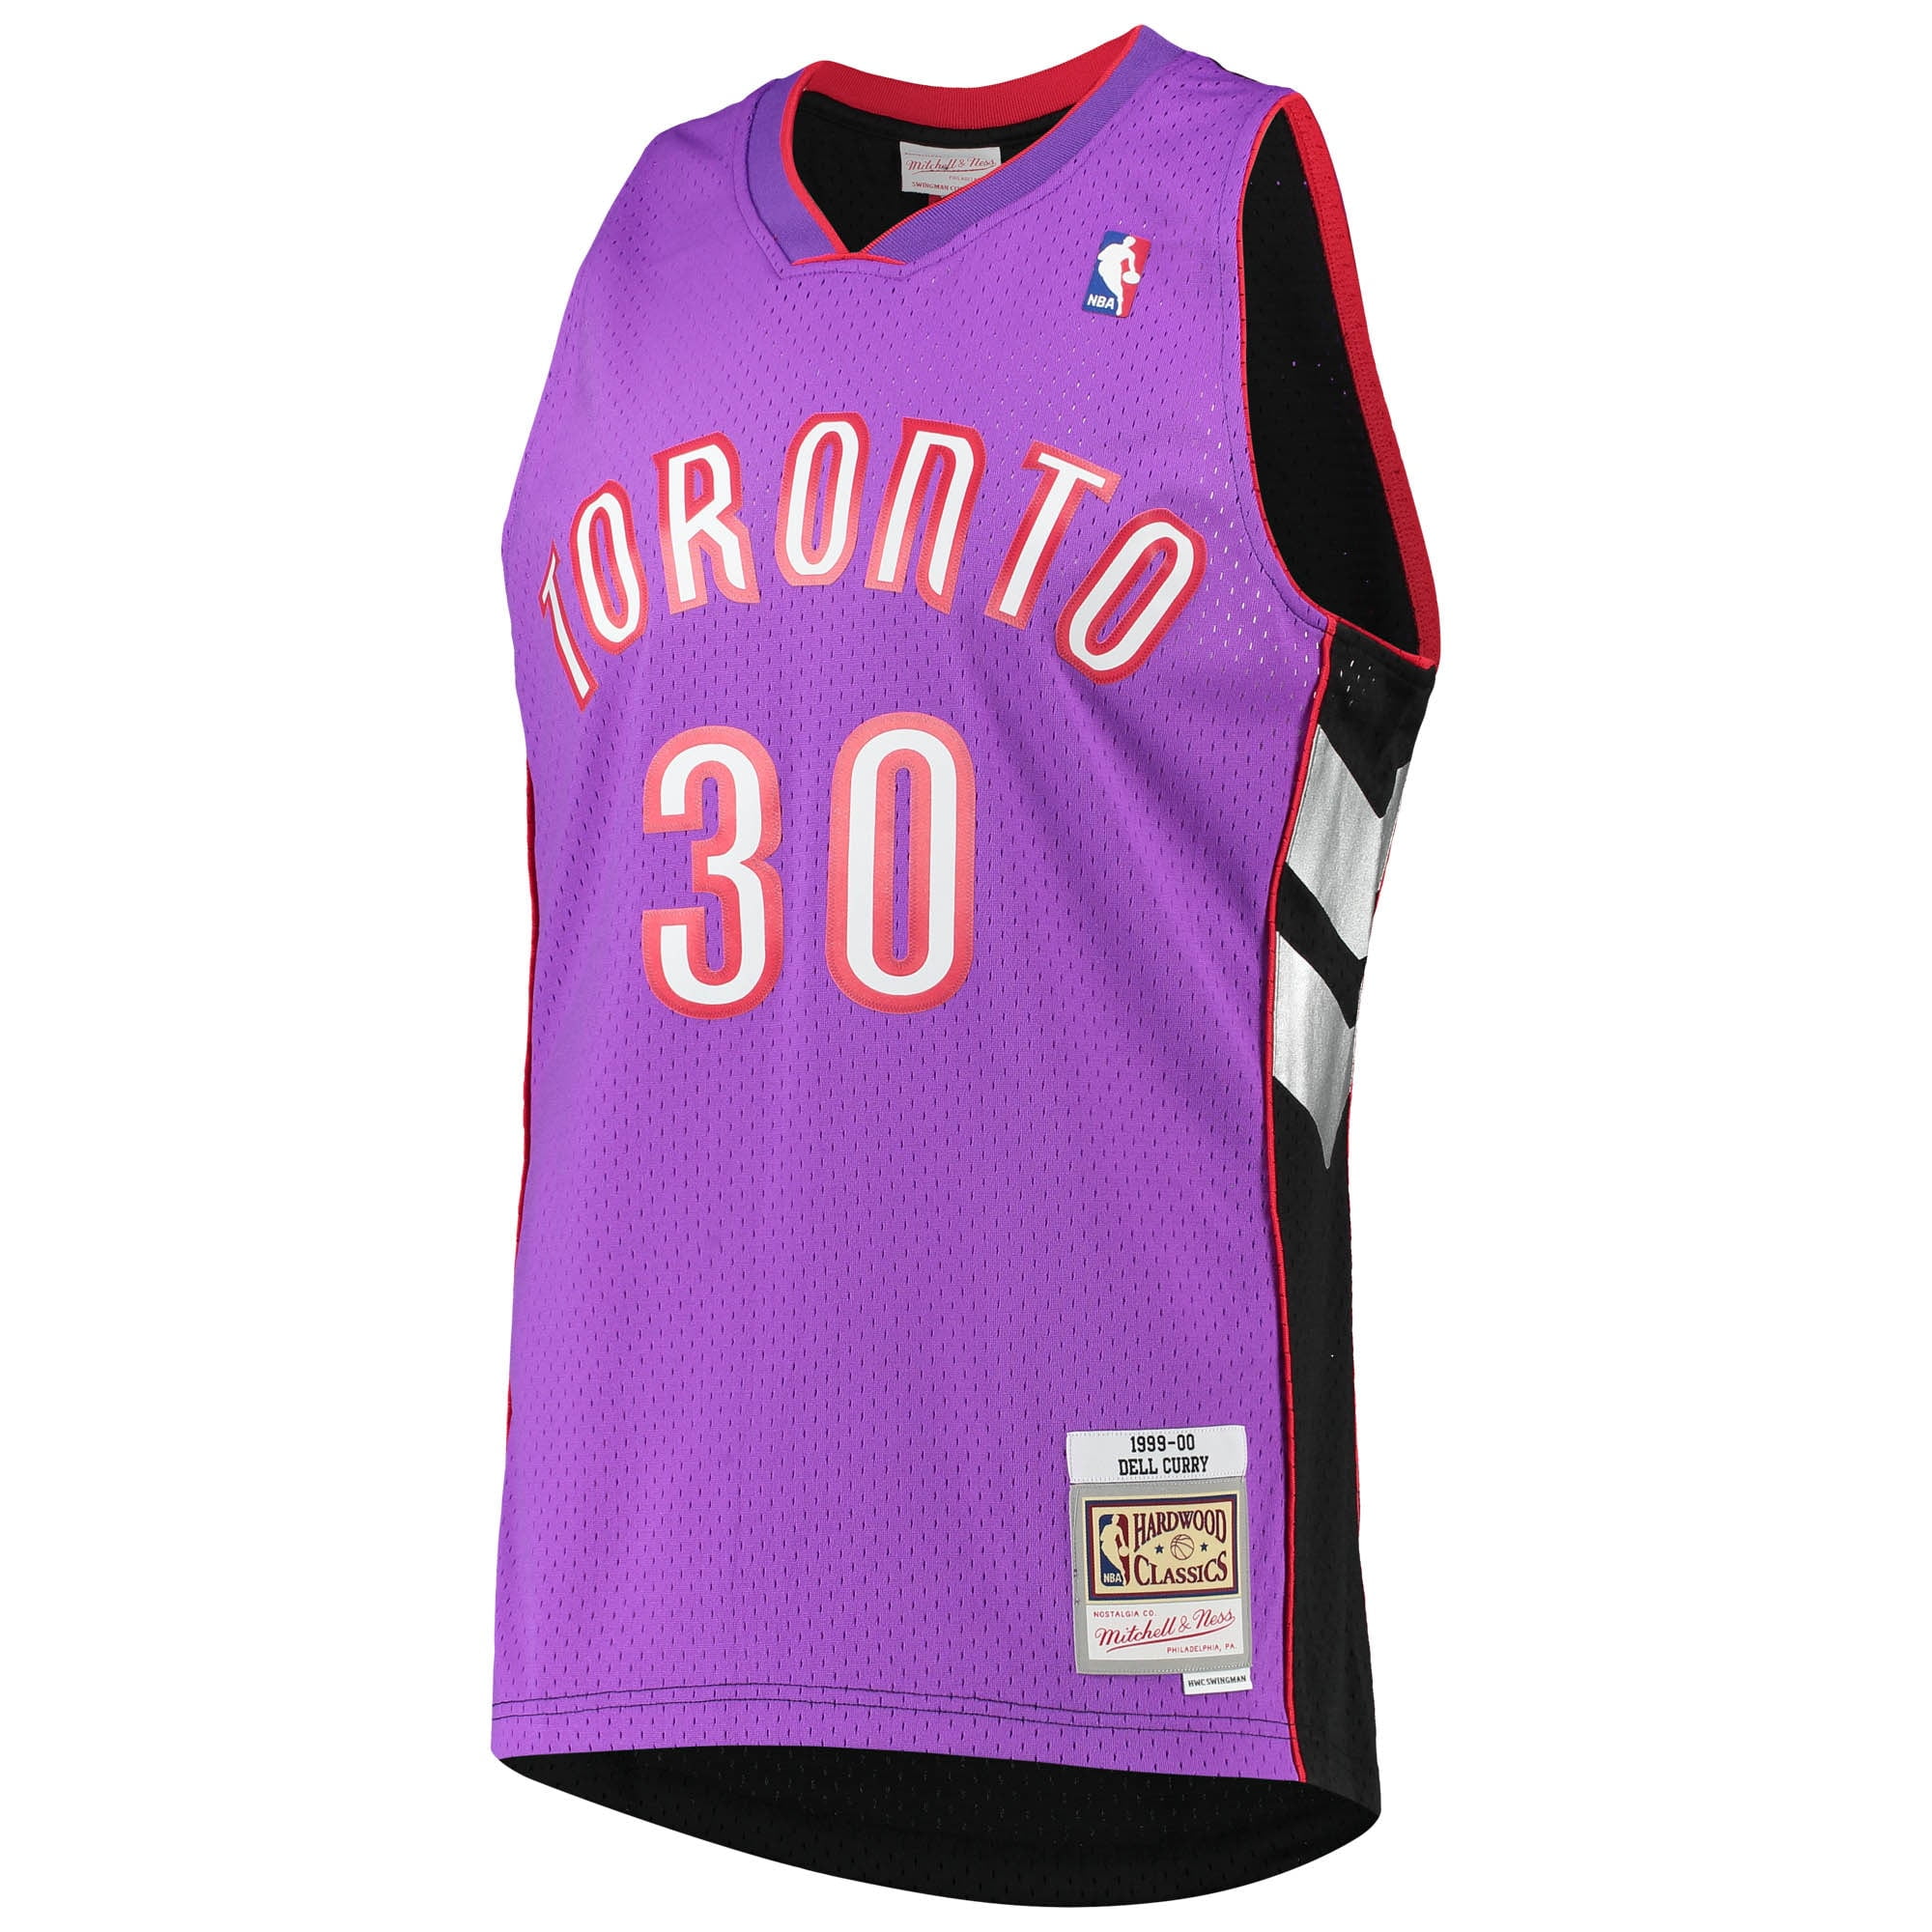 Fanatics Authentic Vince Carter Purple Toronto Raptors Autographed Mitchell & Ness 1999-00 Authentic Jersey